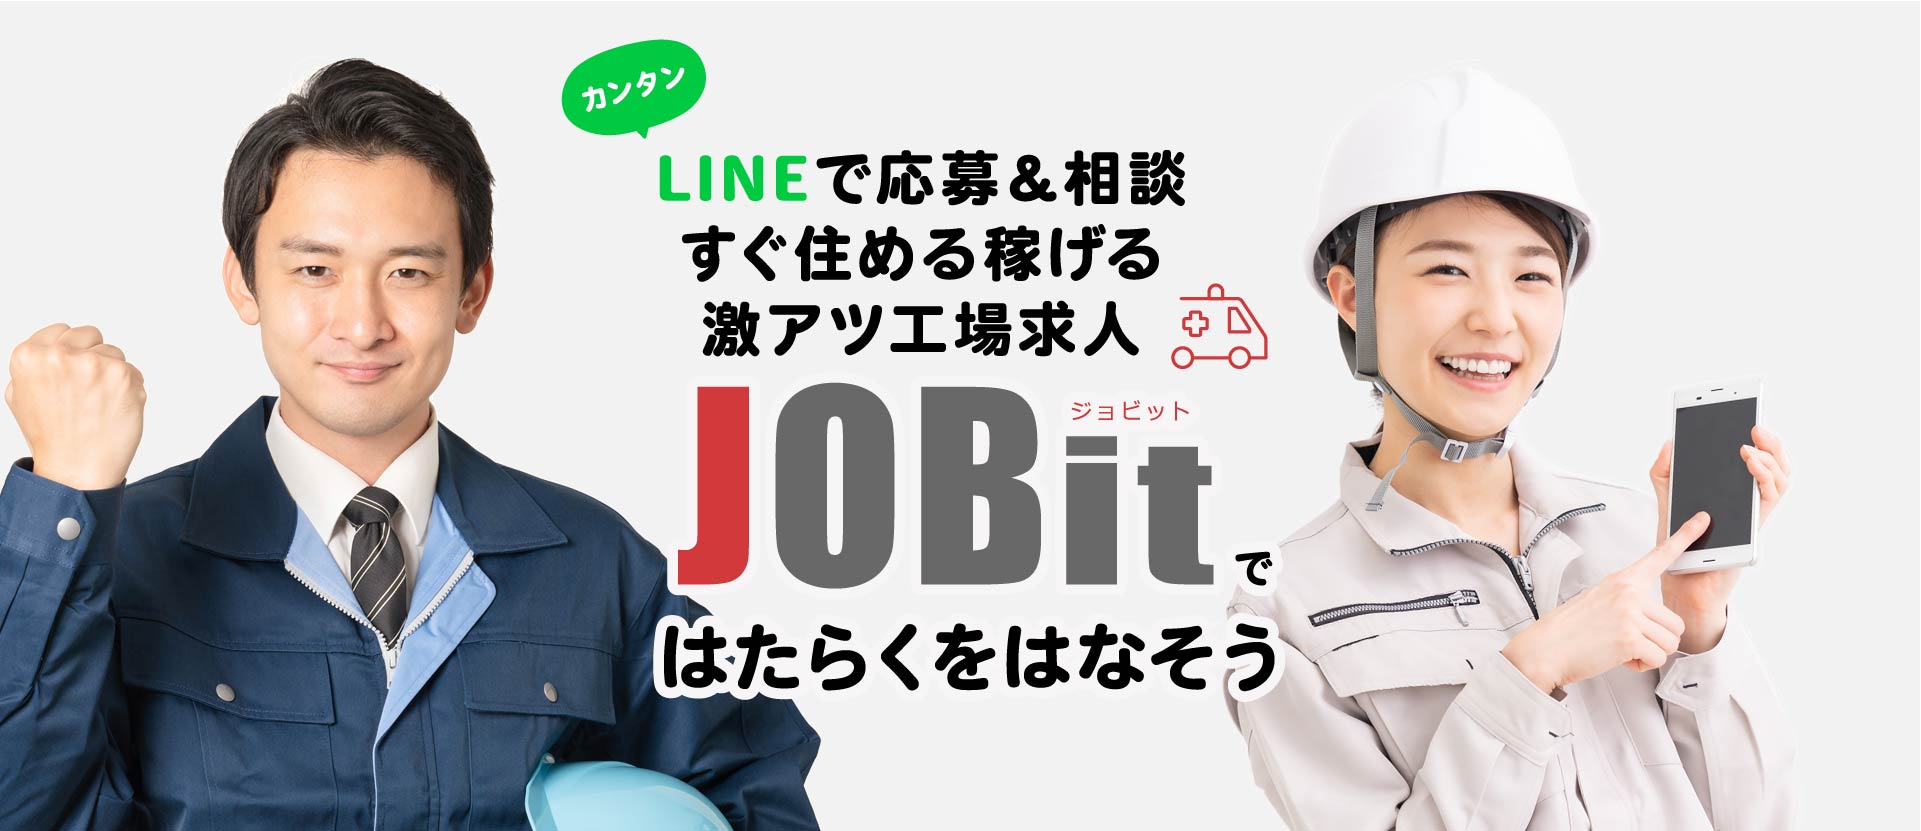 LINEでカンタン応募＆相談 すぐ住める稼げる激アツ工場求人「JOBit（ジョビット）ではたらくをはなそう」